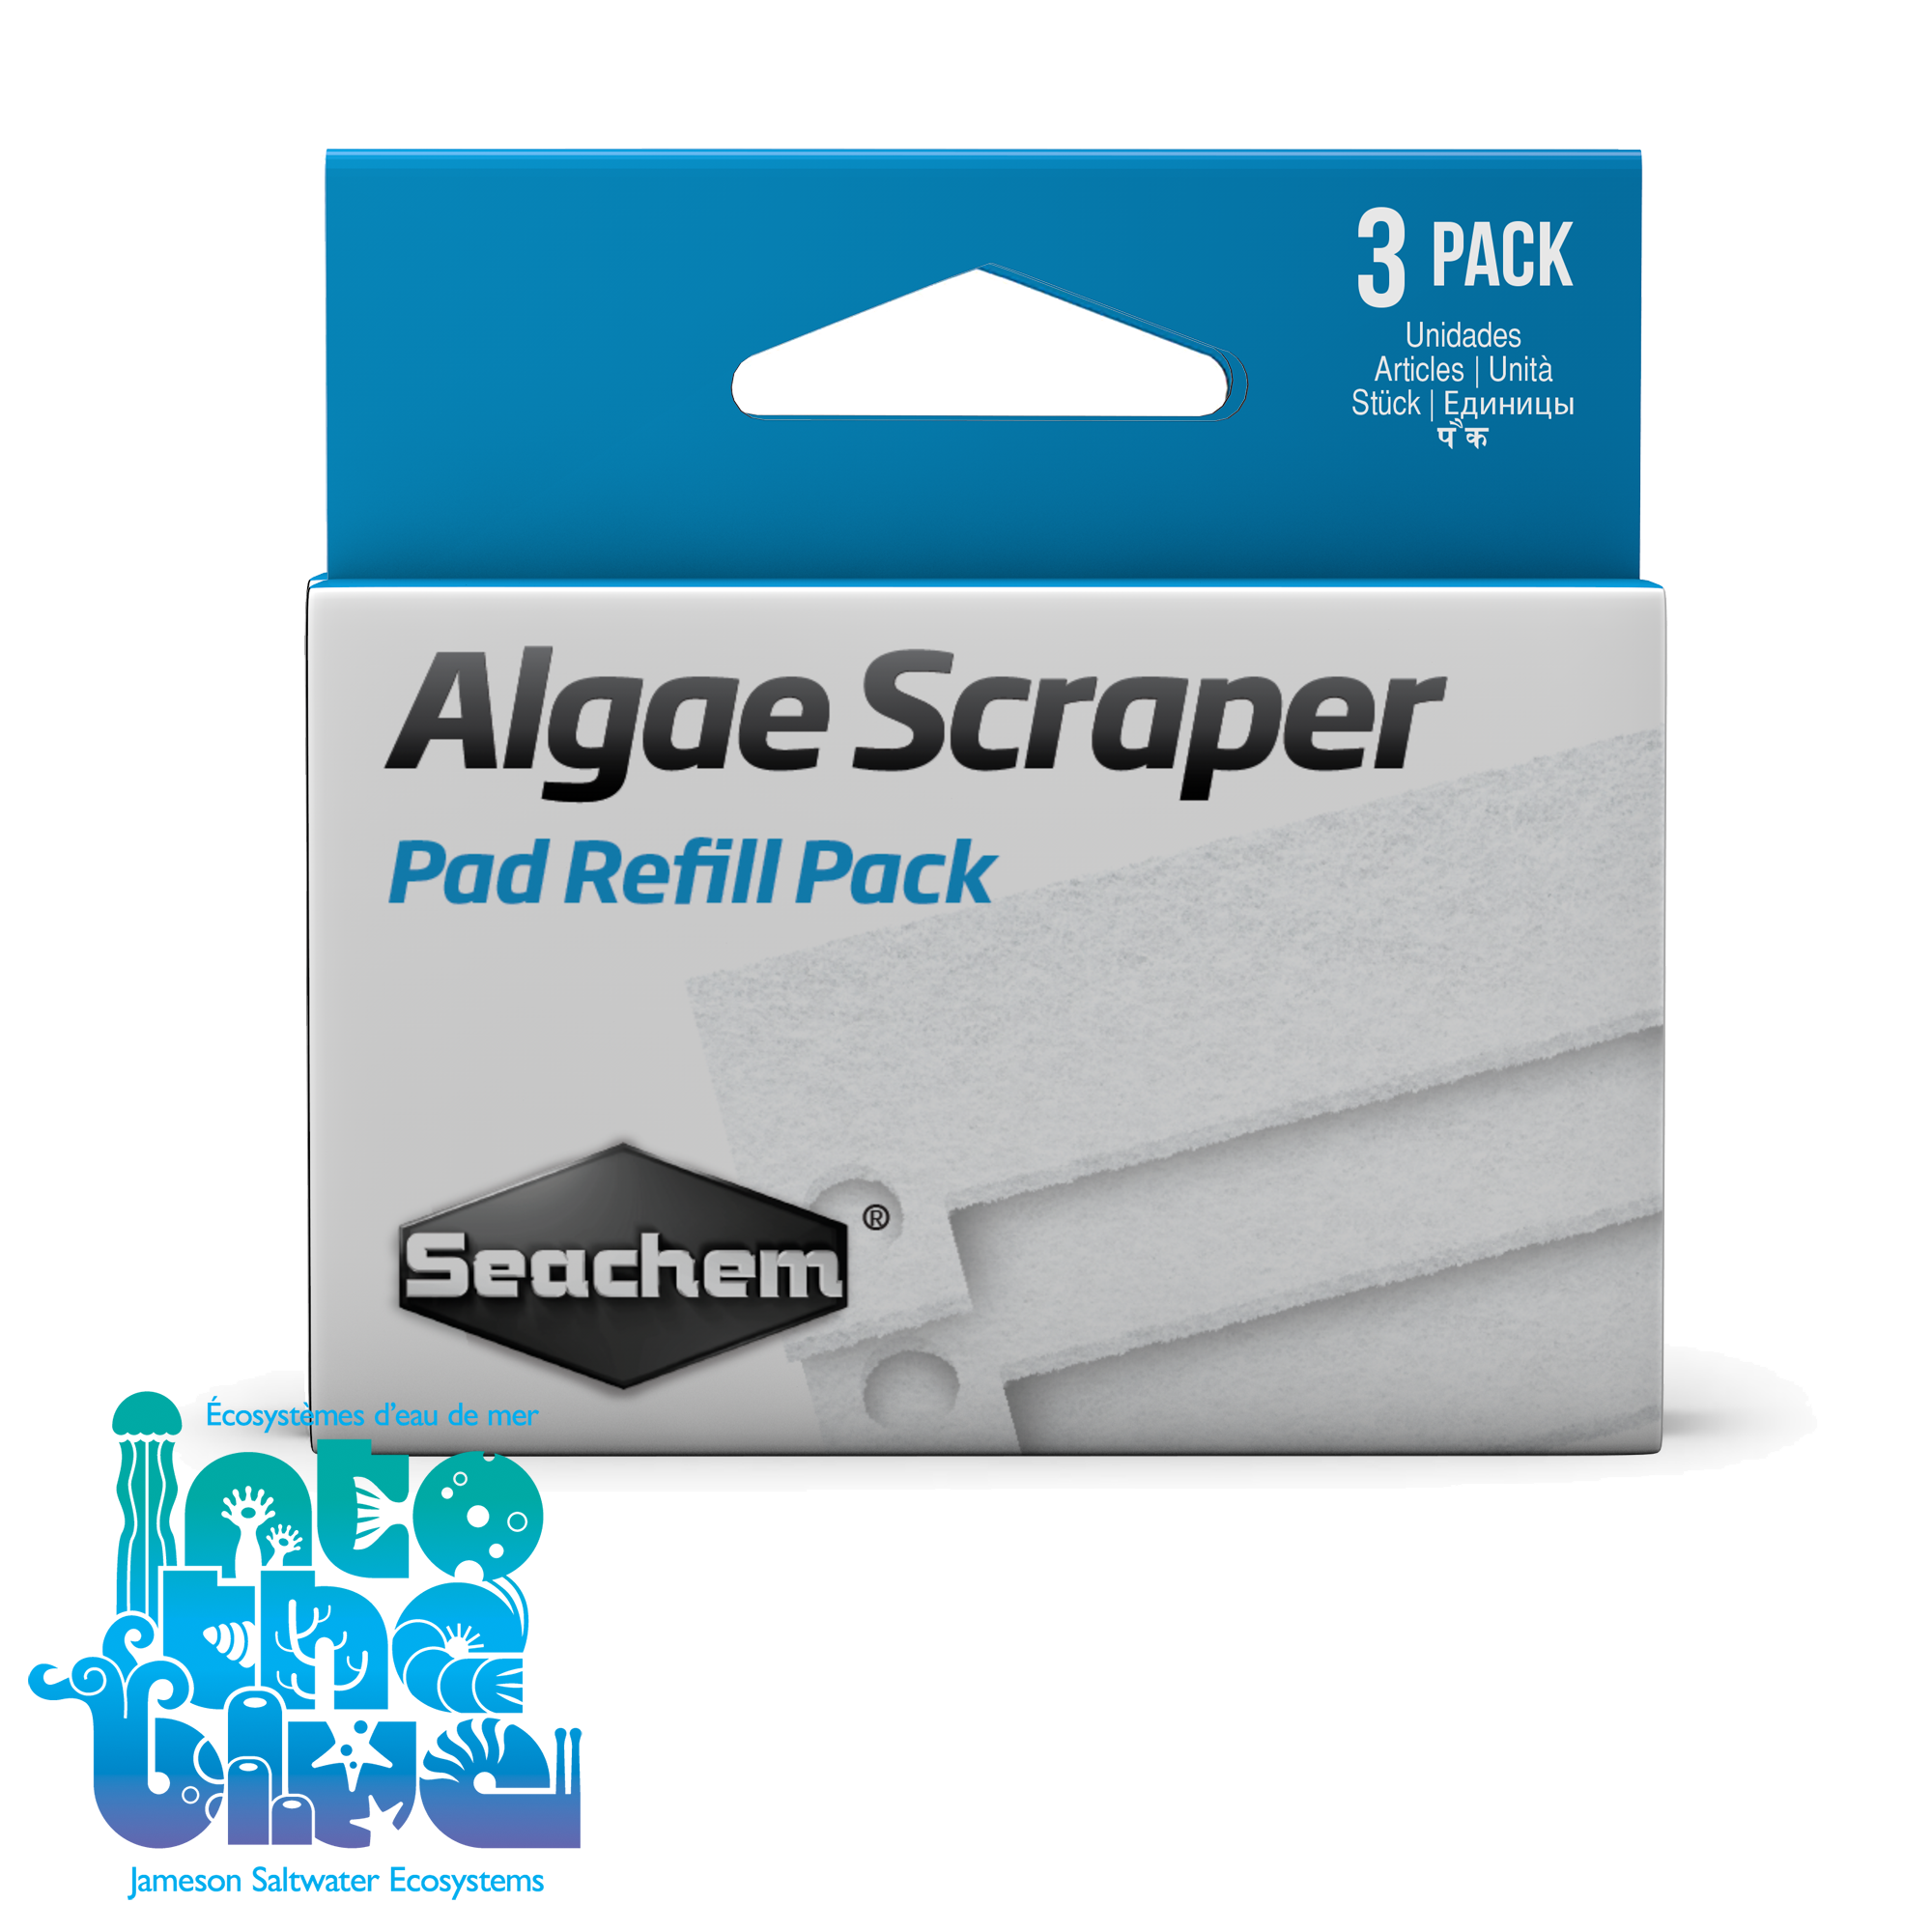 Seachem - Algae Scraper | Replacement Scrubber Pads